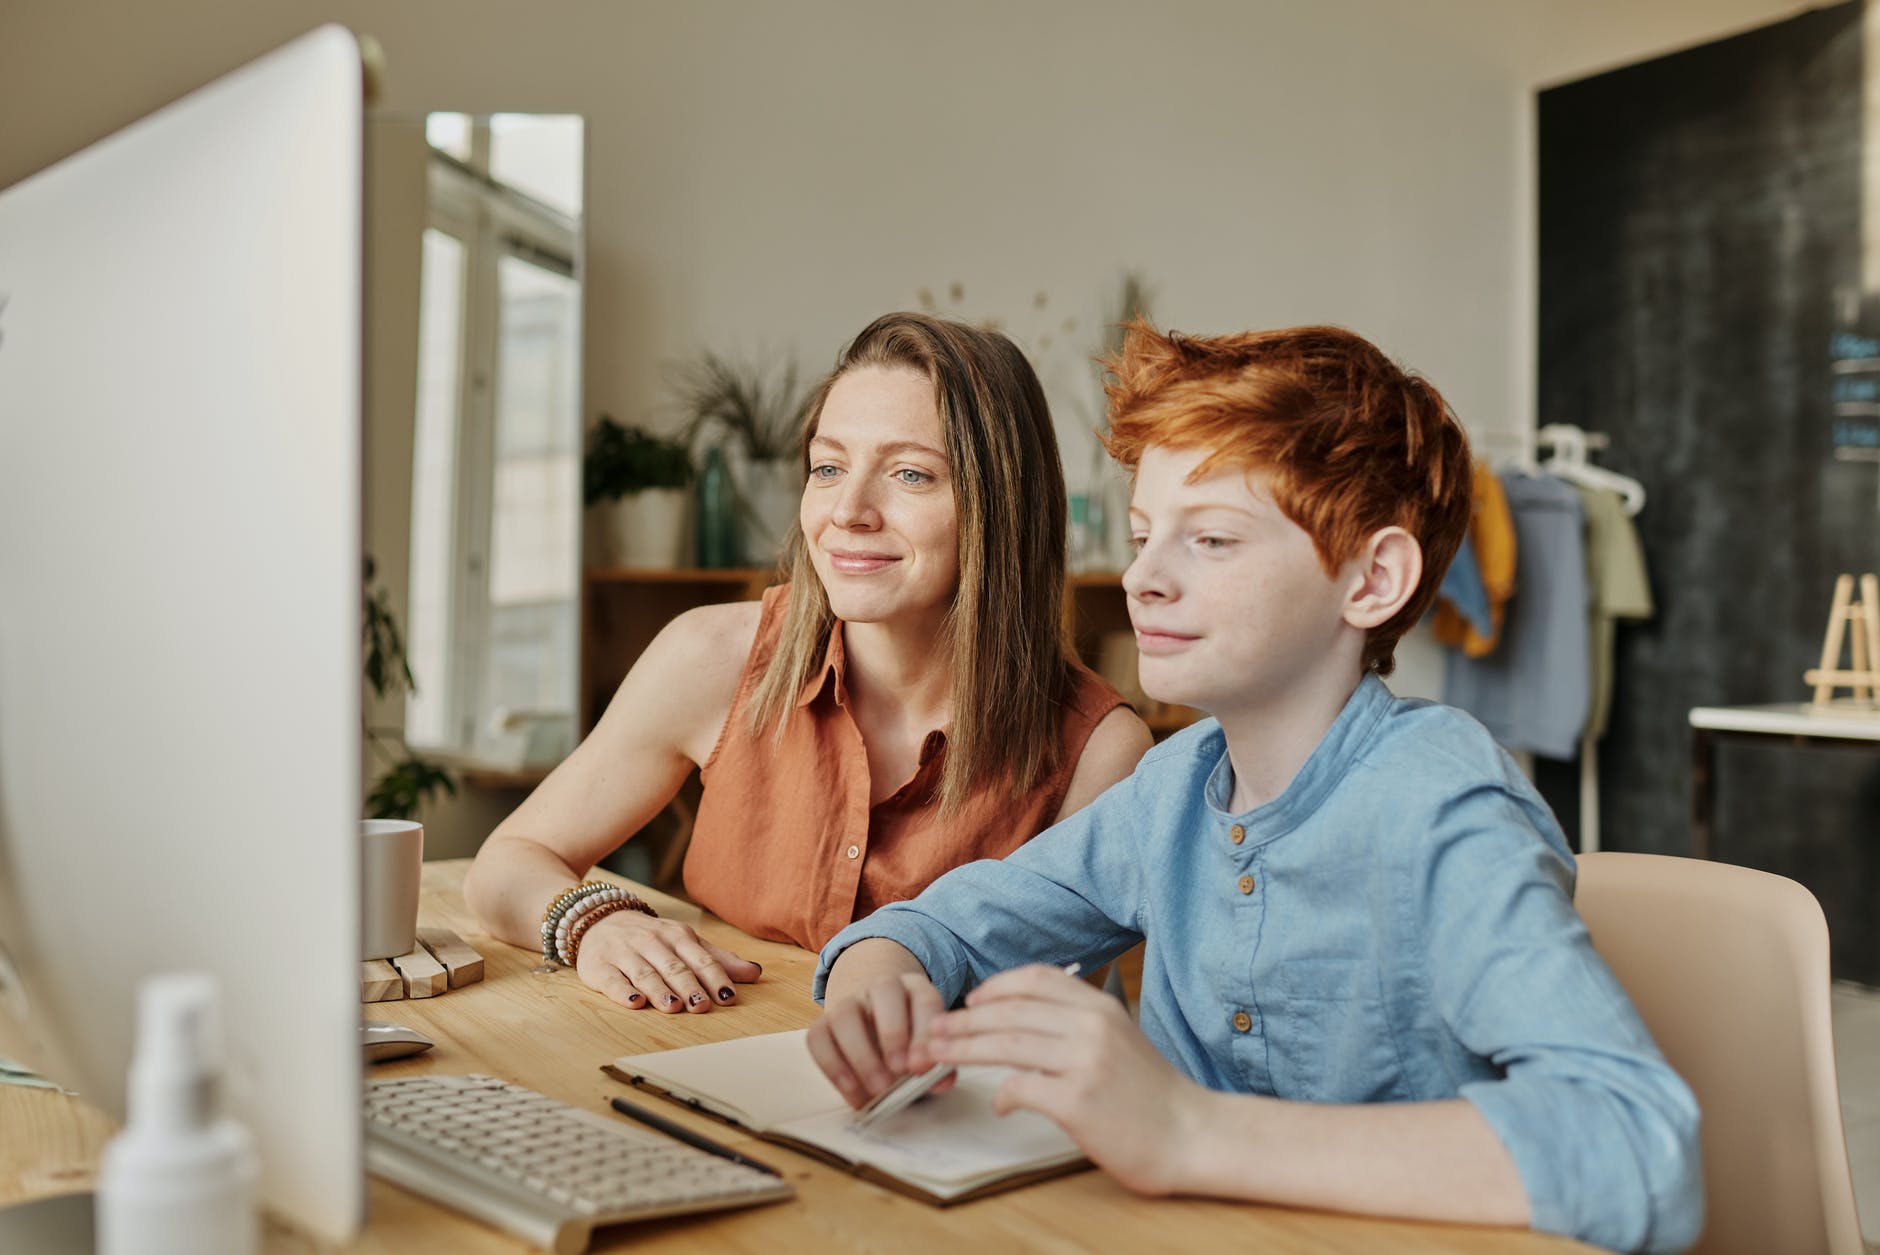 Imagen en la que aparecen una mujer y un niño de alrededor de los 12 años sentados frente a una pantalla de ordenador, mirándo la misma con atención